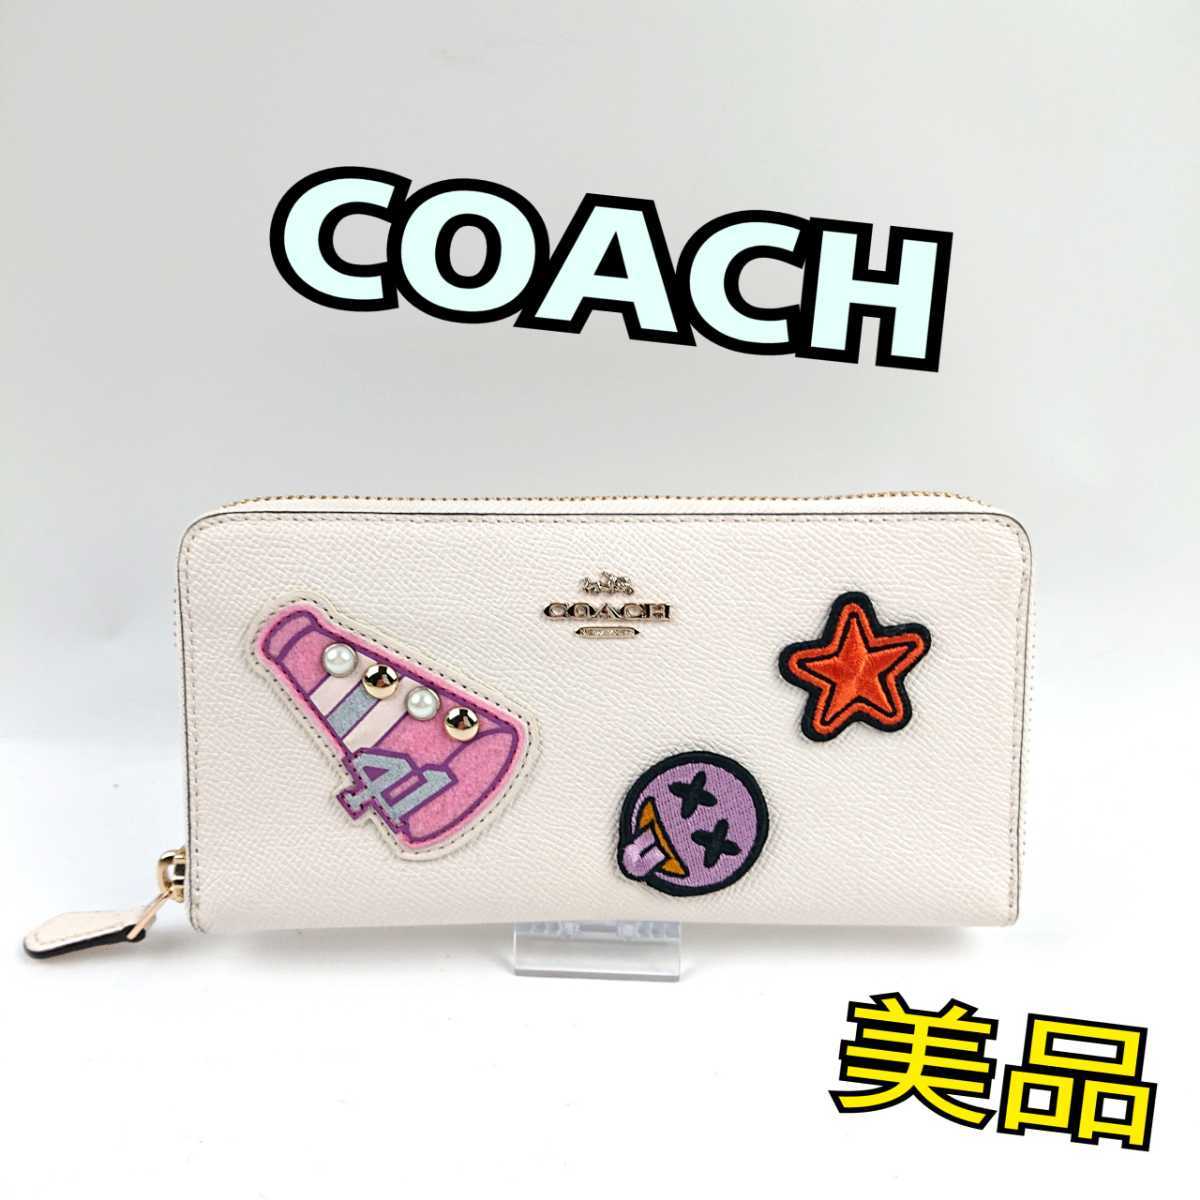 COACH コーチ 財布